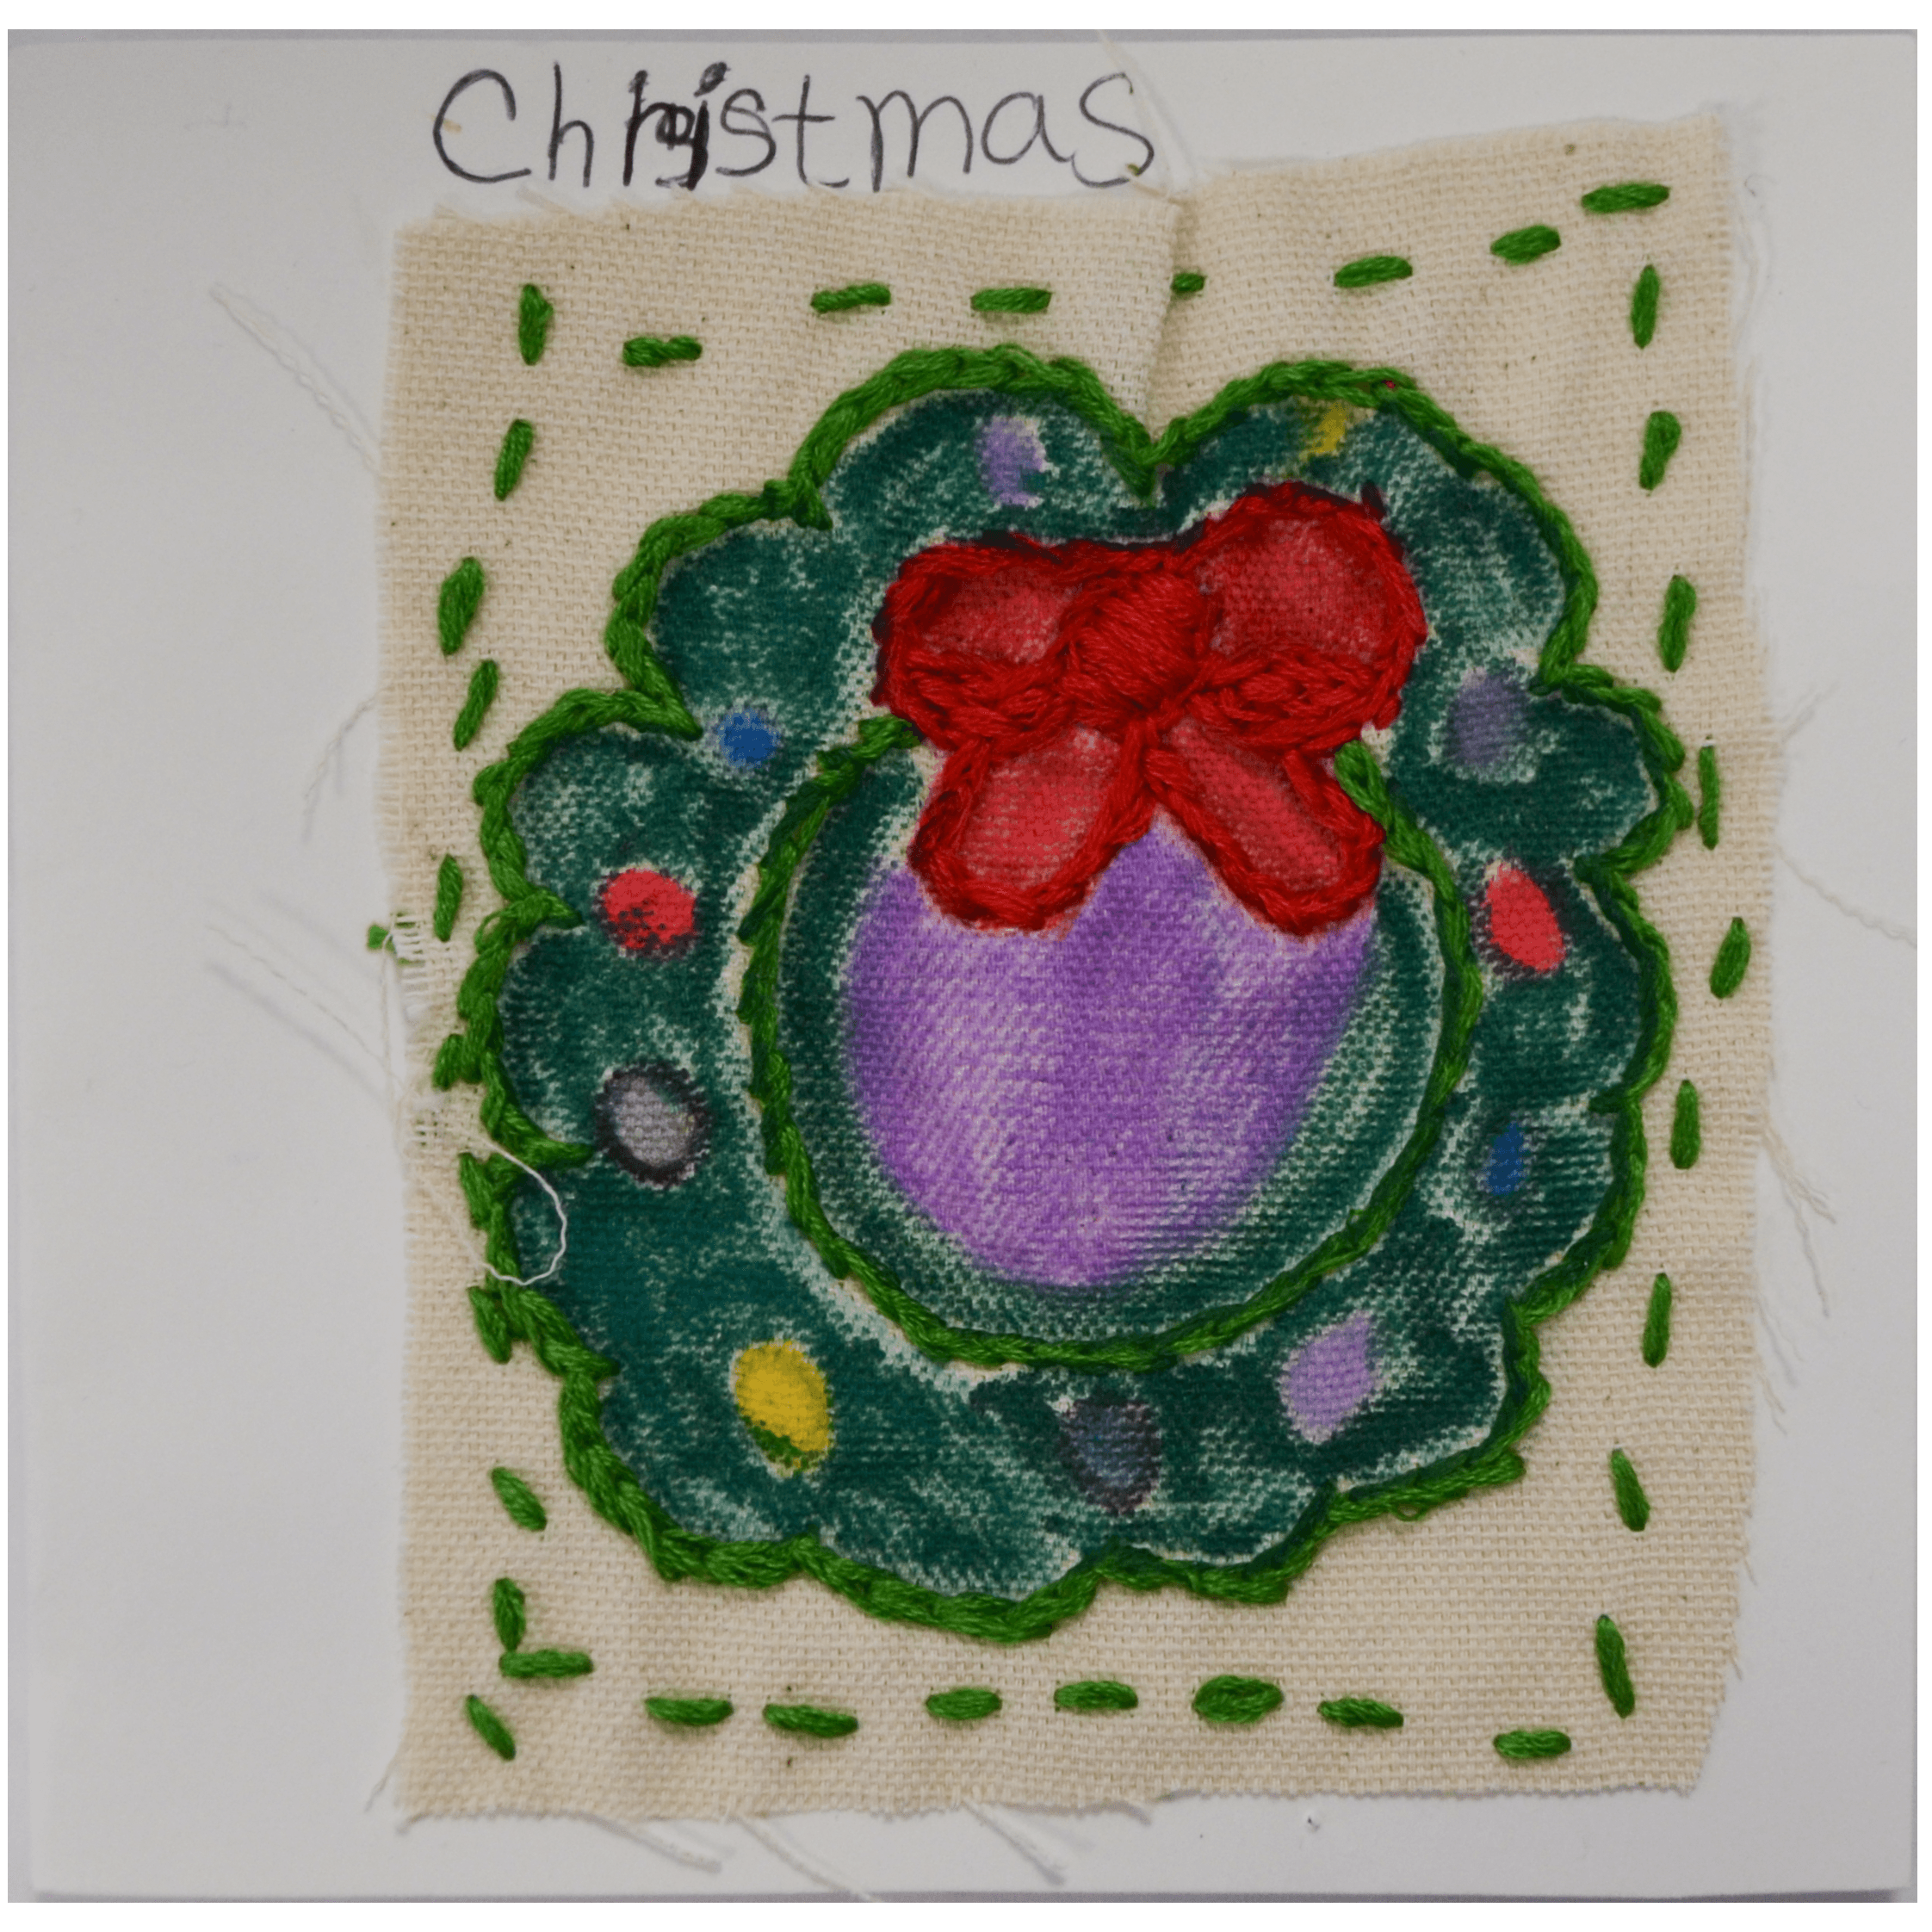 Christmas card (wreath) by Betty Antoine